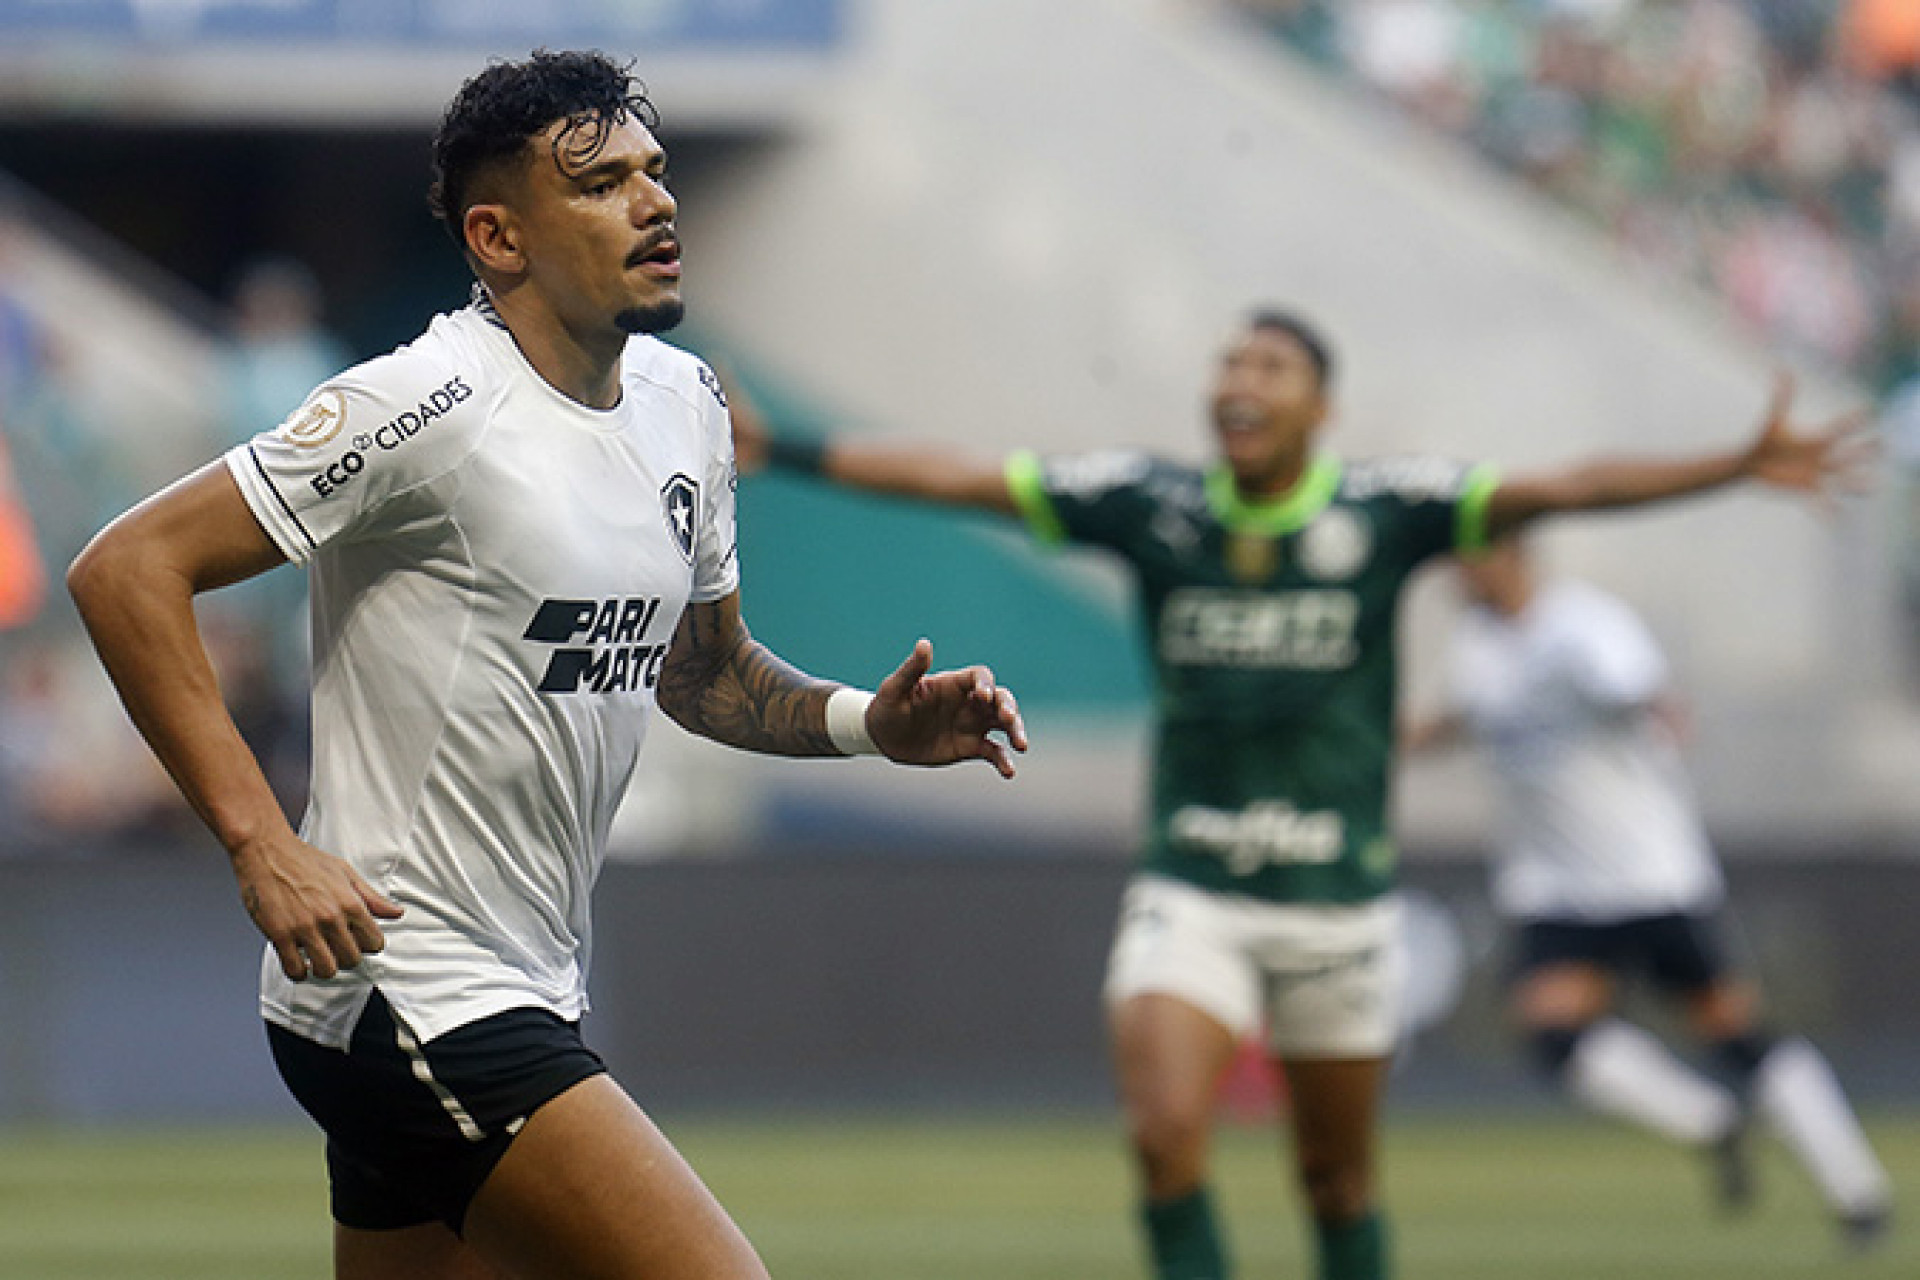 Venda de ingressos para jogo contra Botafogo no Allianz Parque pelo  Brasileirão – Palmeiras